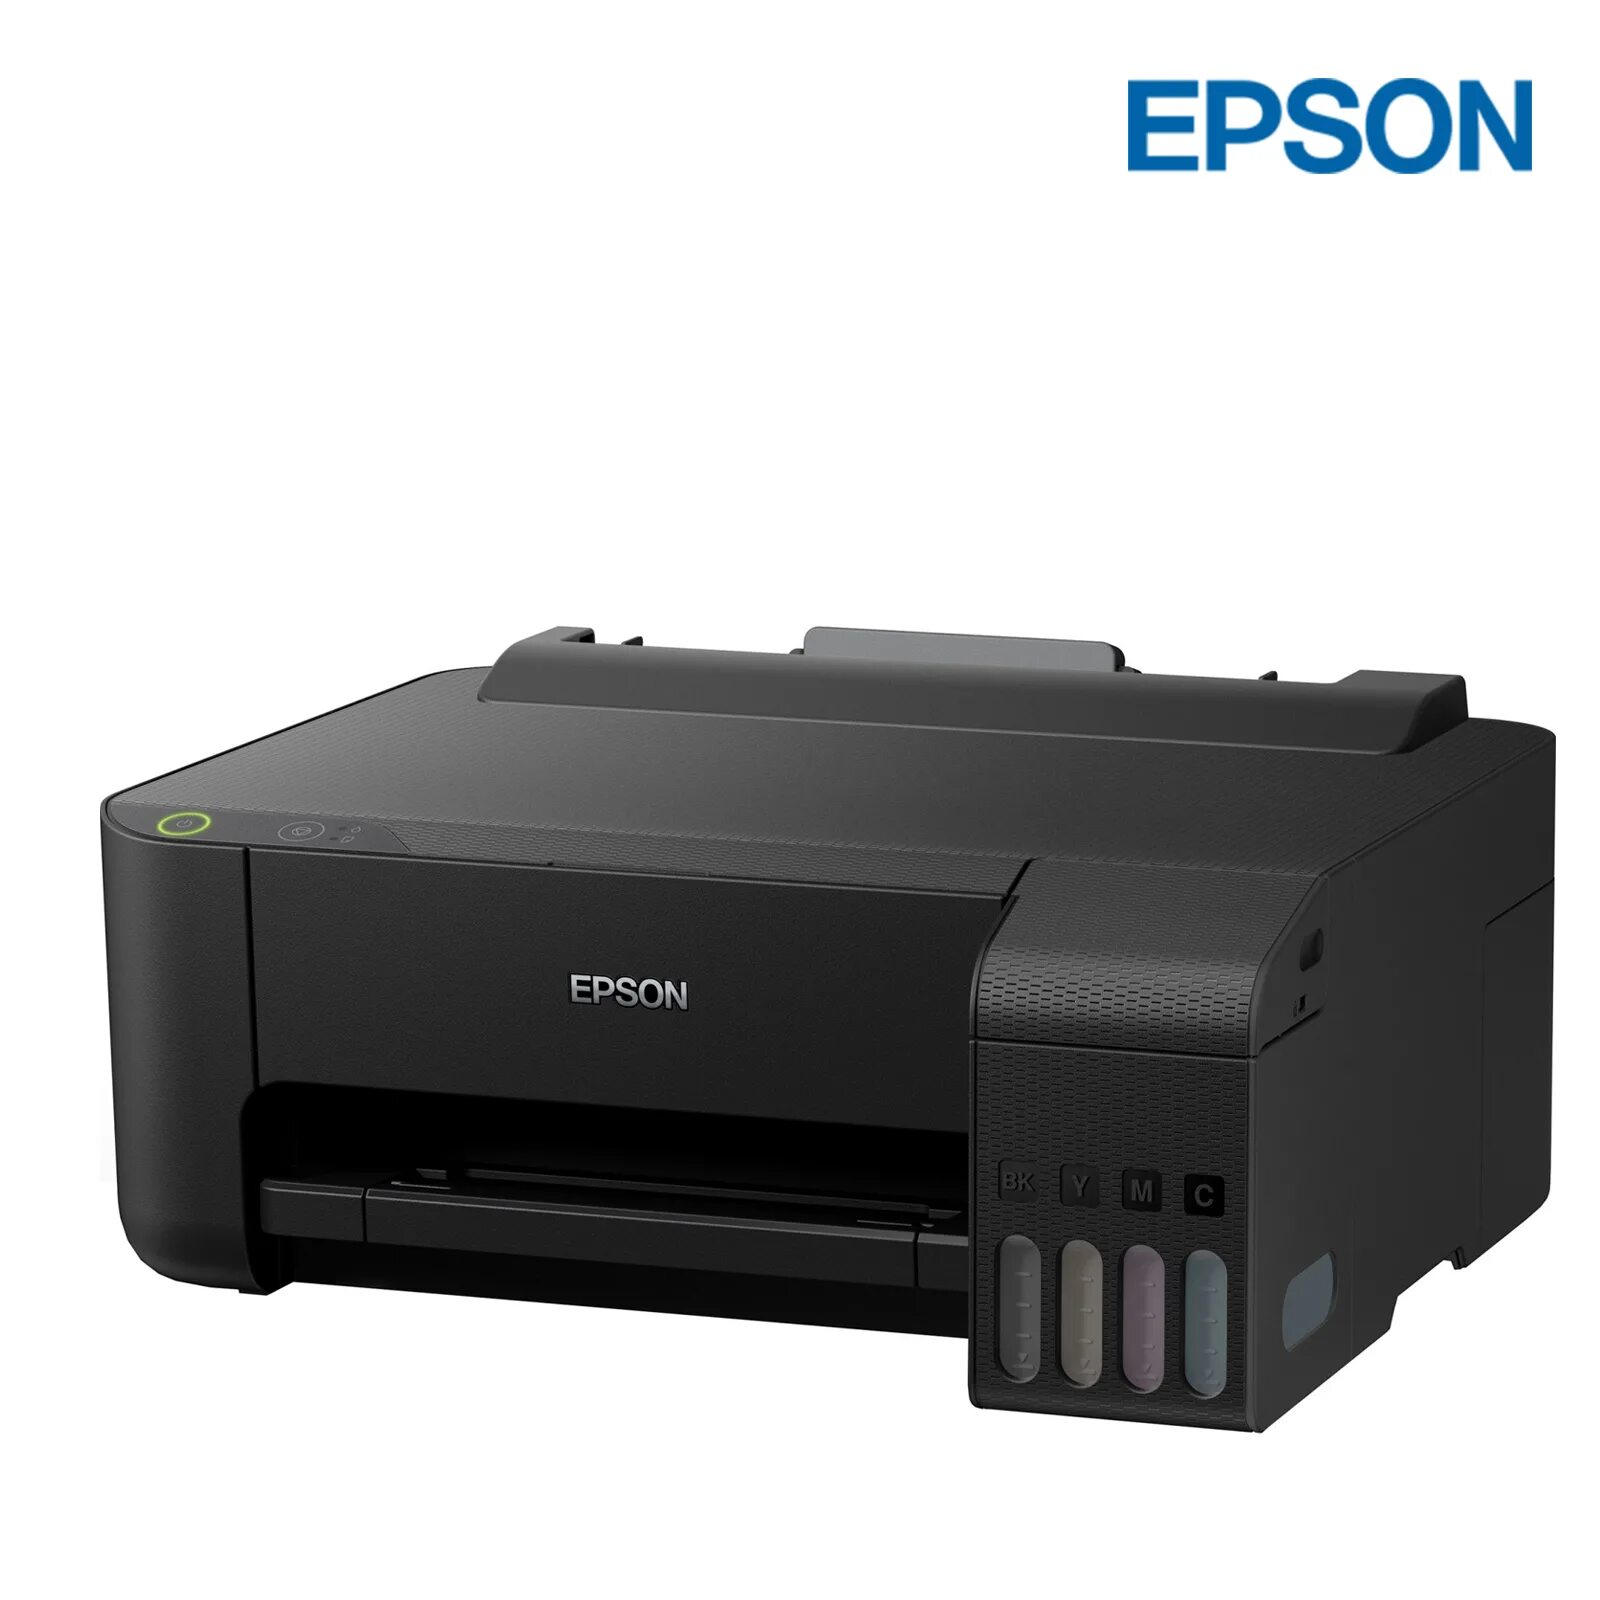 Принтер Epson l3100. Цветной принтер Эпсон l3100. Epson l3110. МФУ Epson l3110 цветной/струйный.